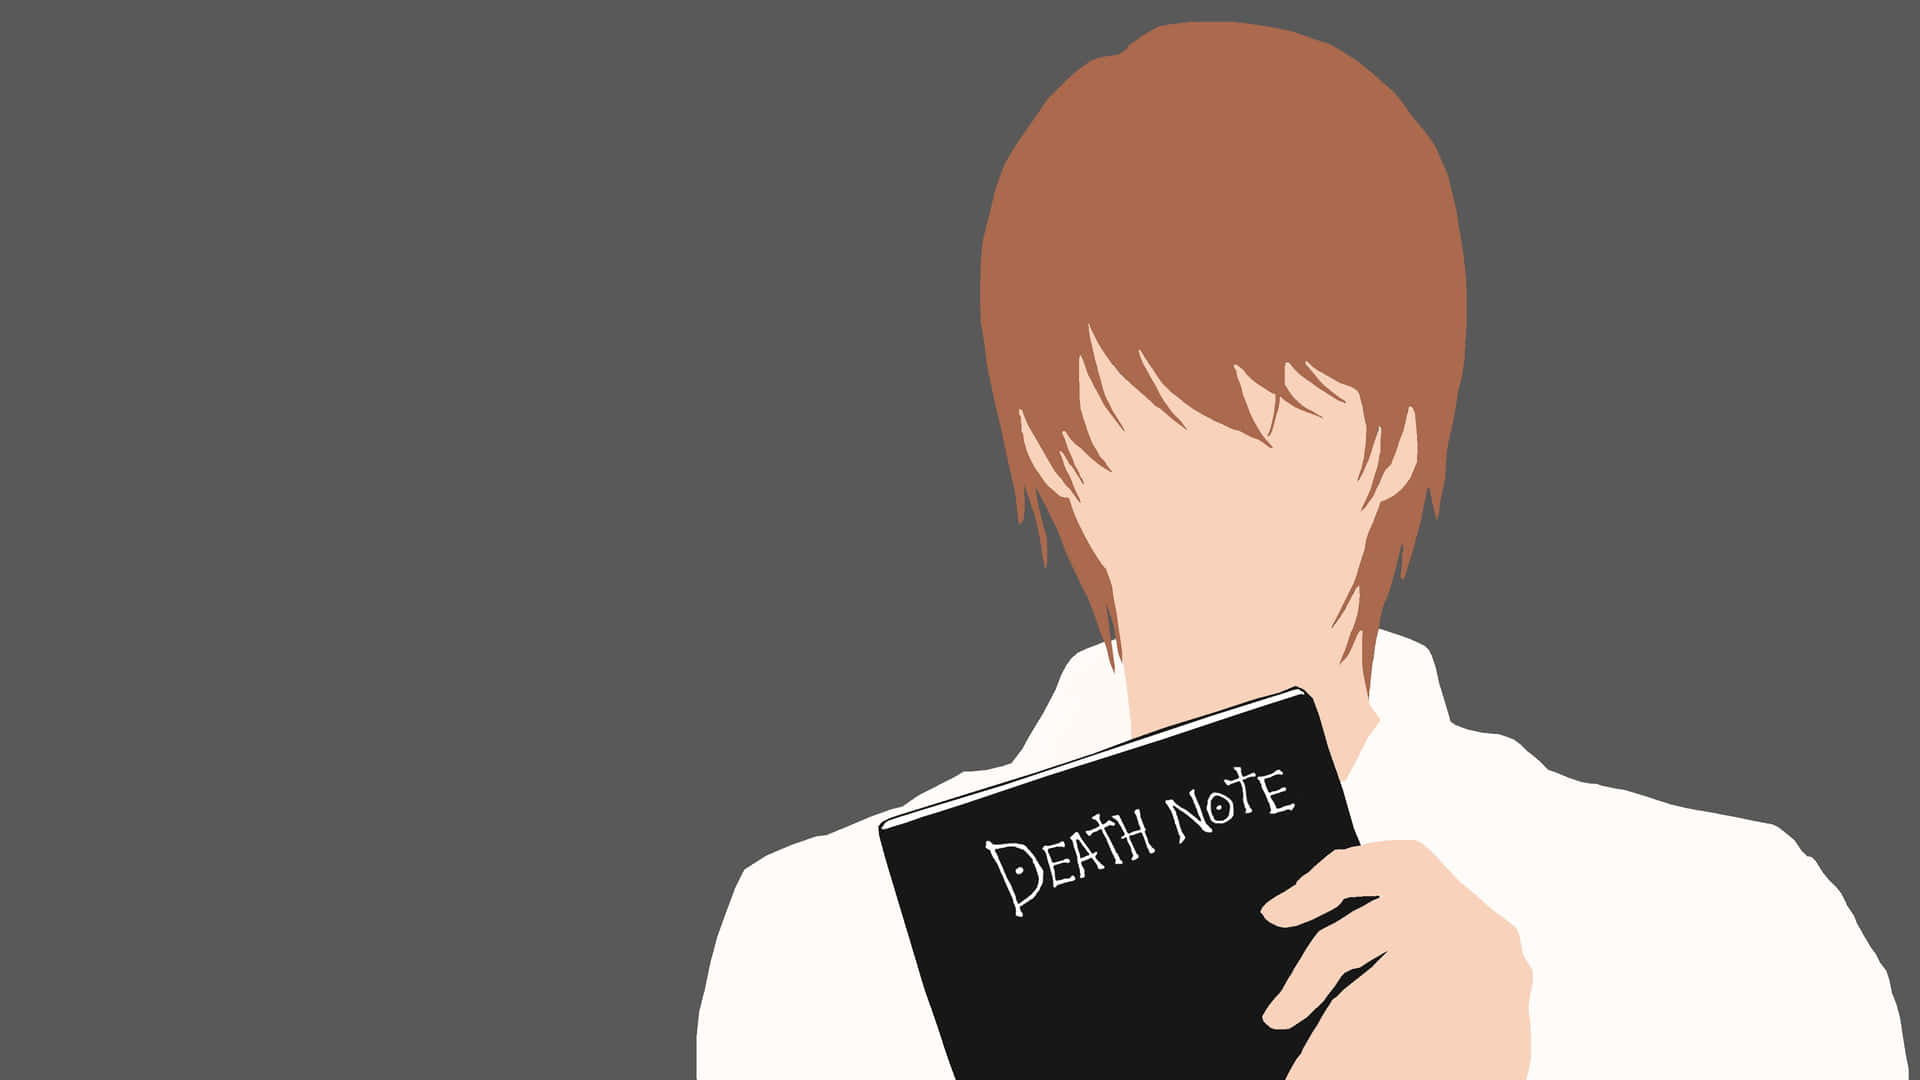 Werwird Den Großartigen Light Yagami In Death Note 4k Überlisten? Wallpaper